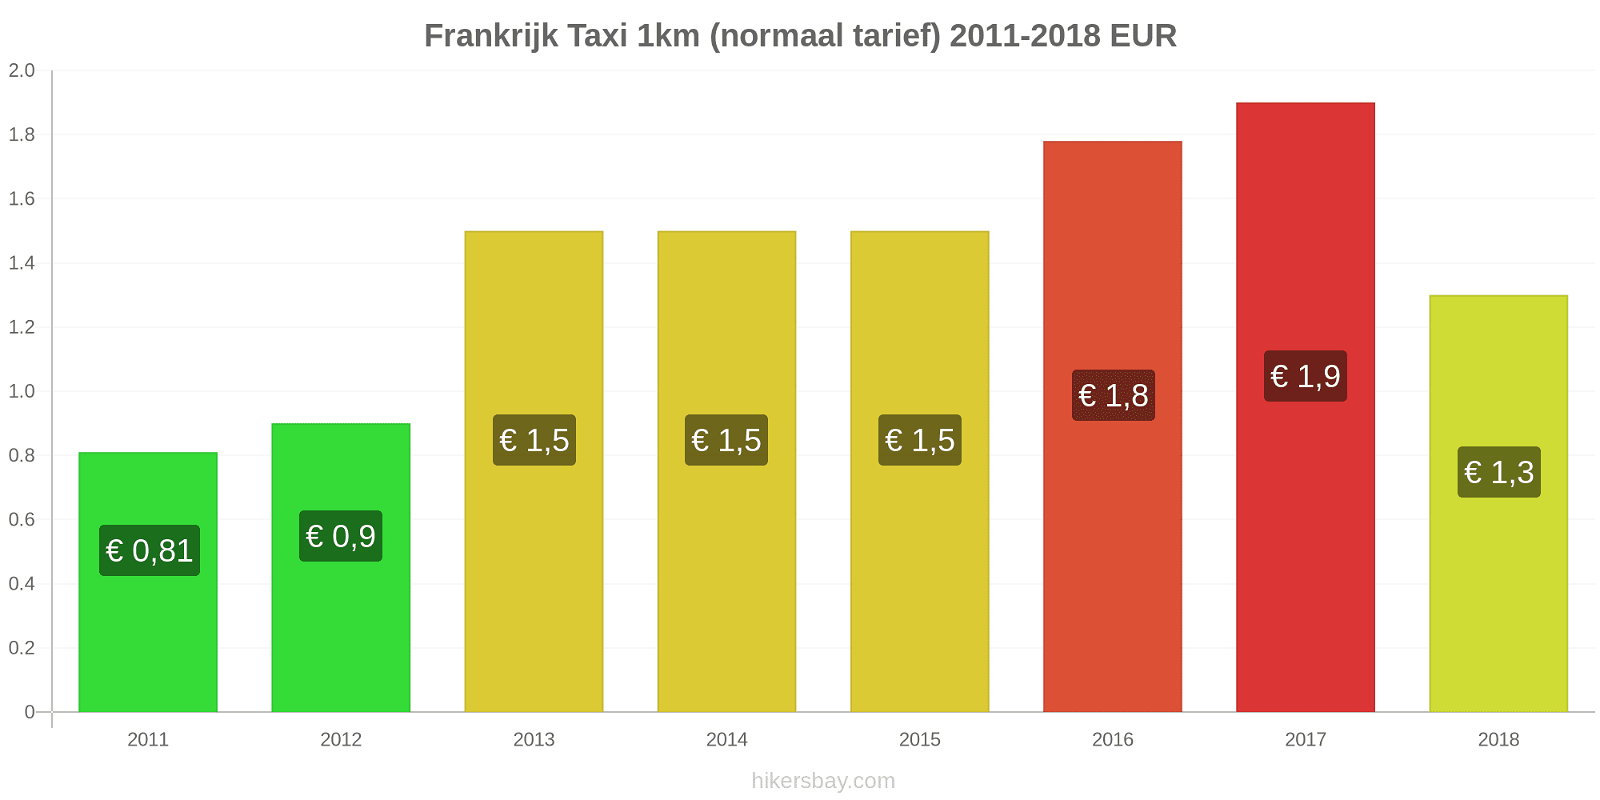 Frankrijk prijswijzigingen Taxi 1km (normaal tarief) hikersbay.com